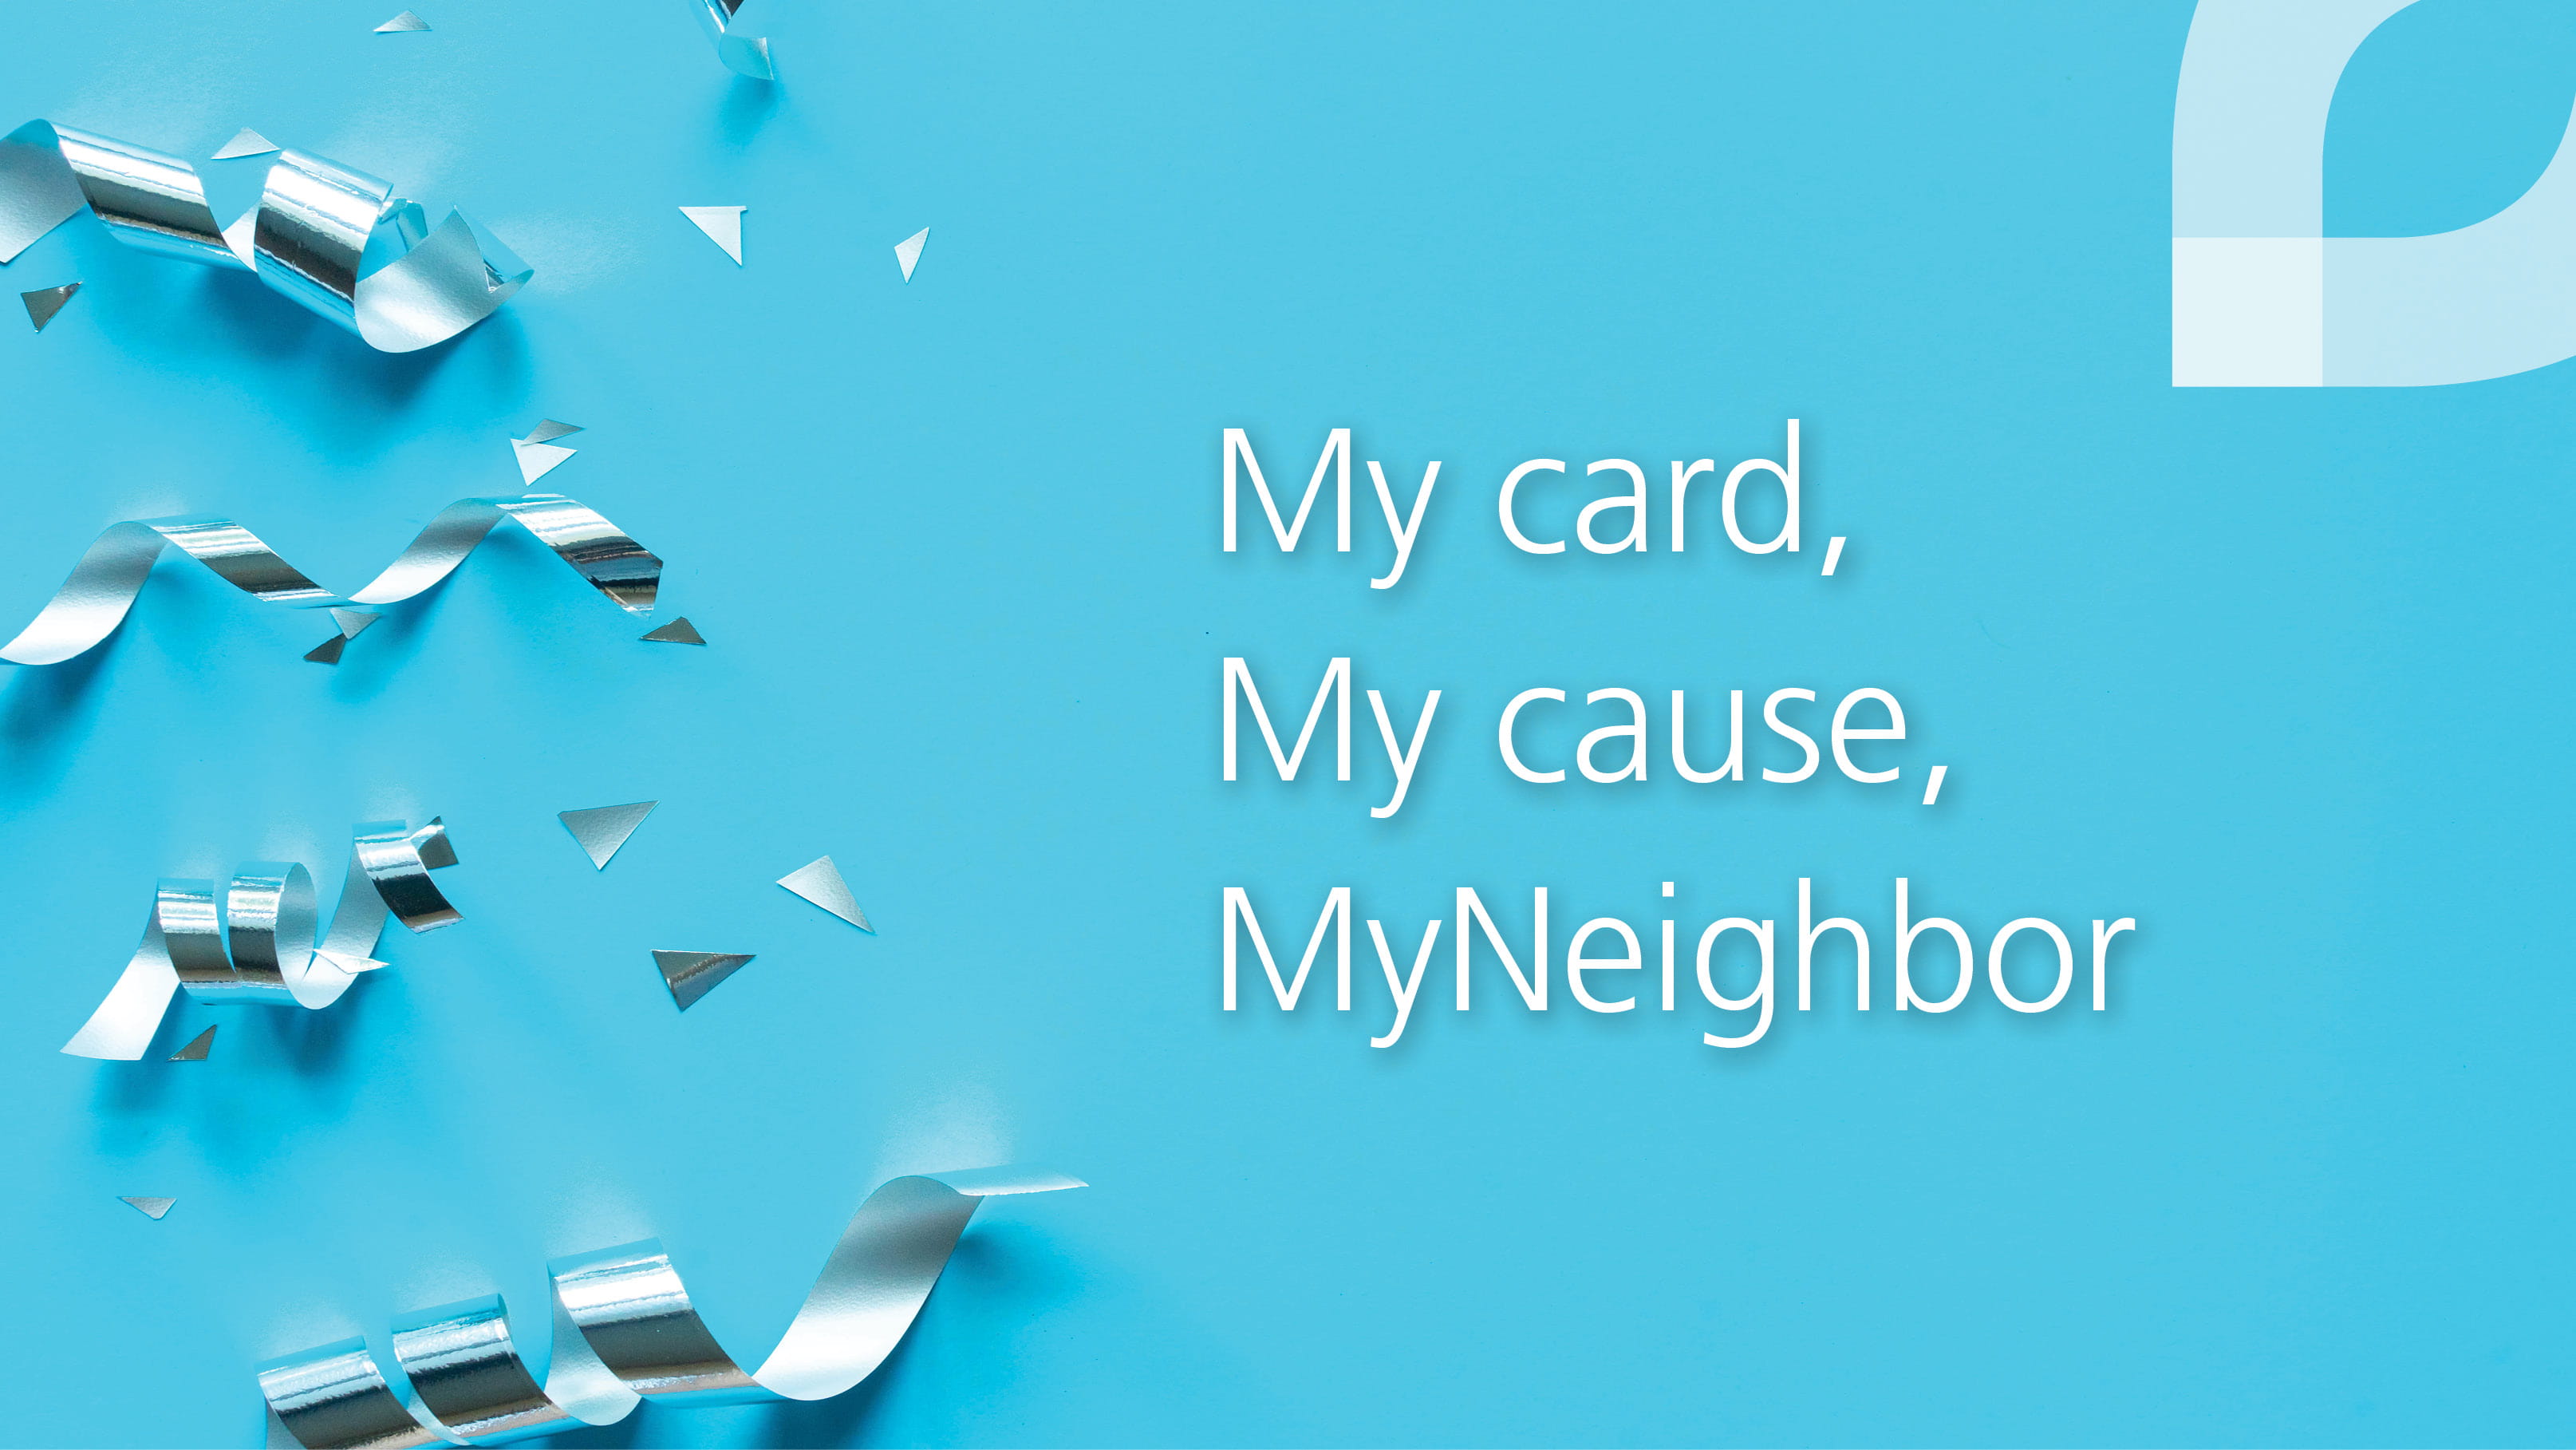 My card, My cause, MyNeighbor